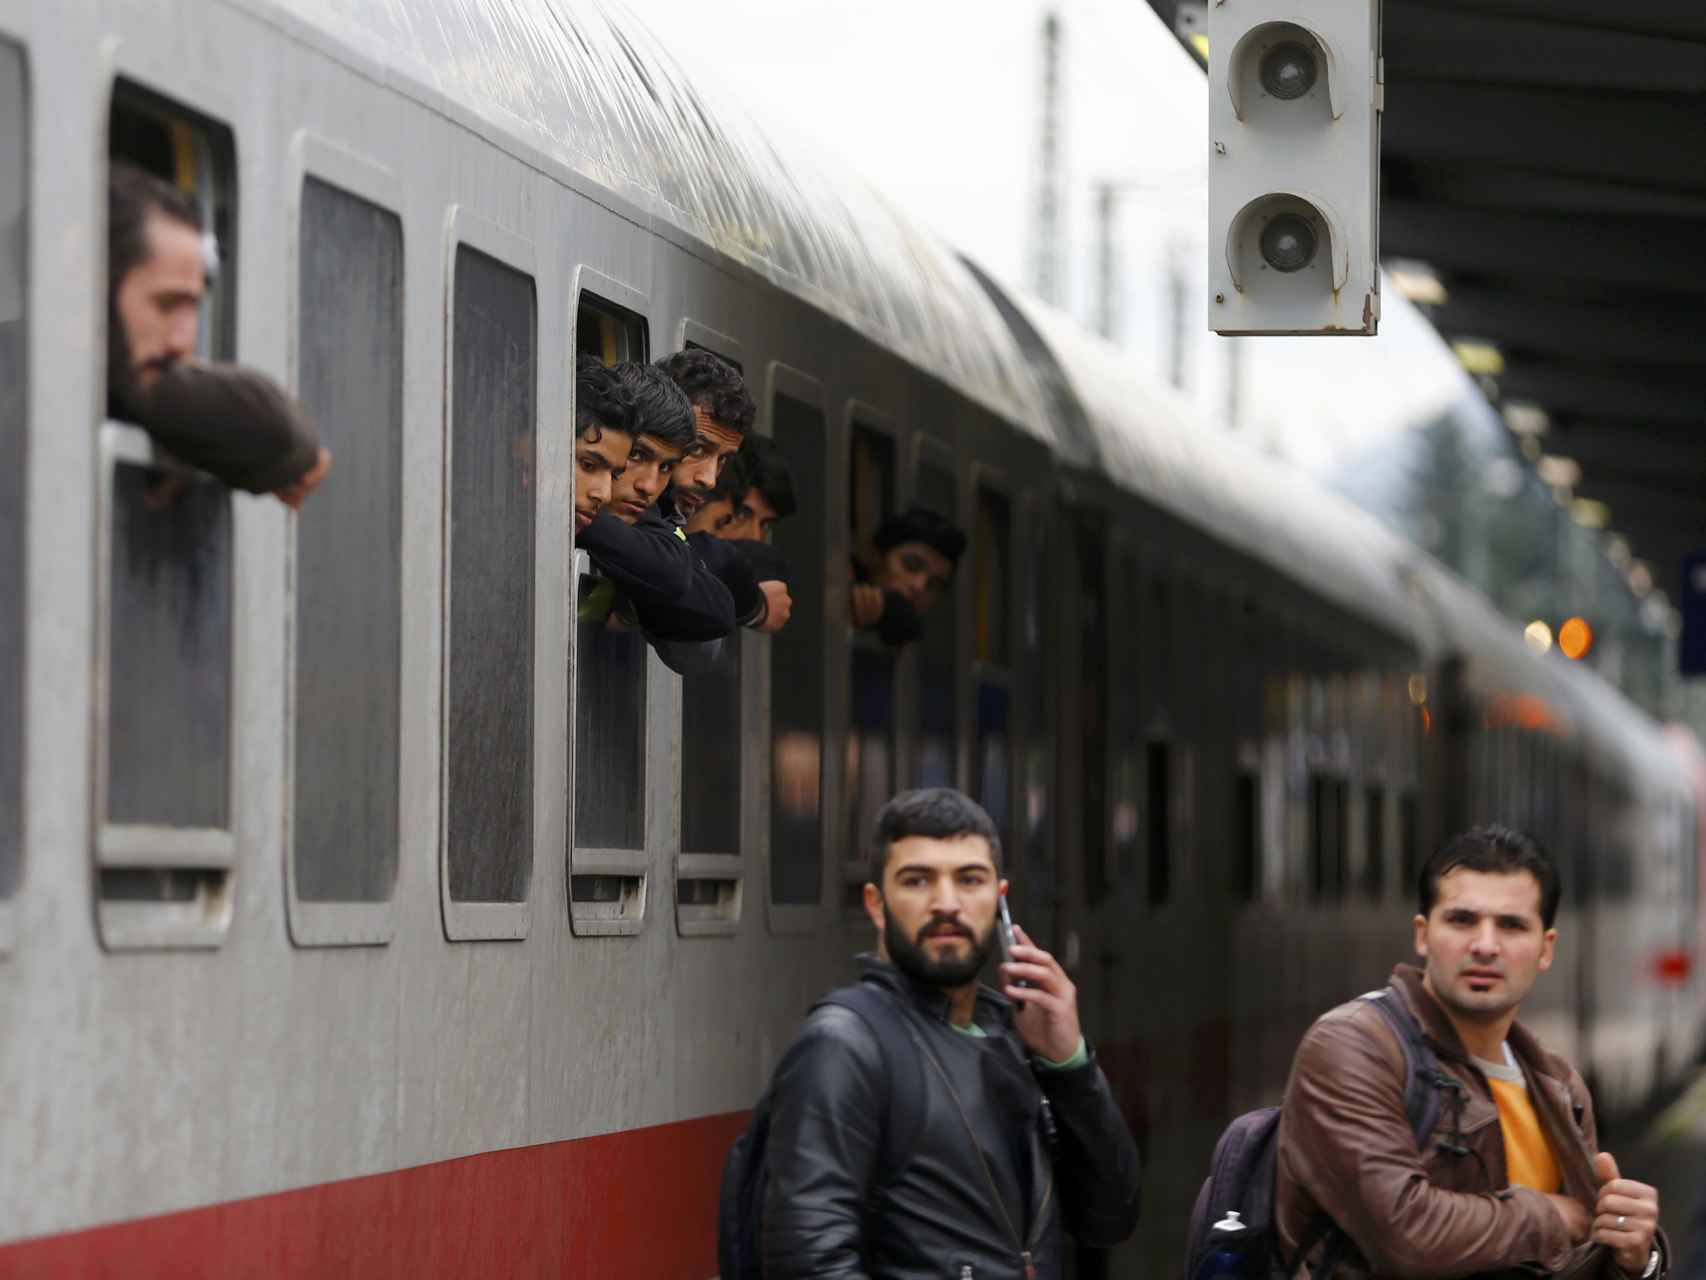 Los migrantes se asoman por la ventana de un tren a su llegada a Freilassing, Alemania.